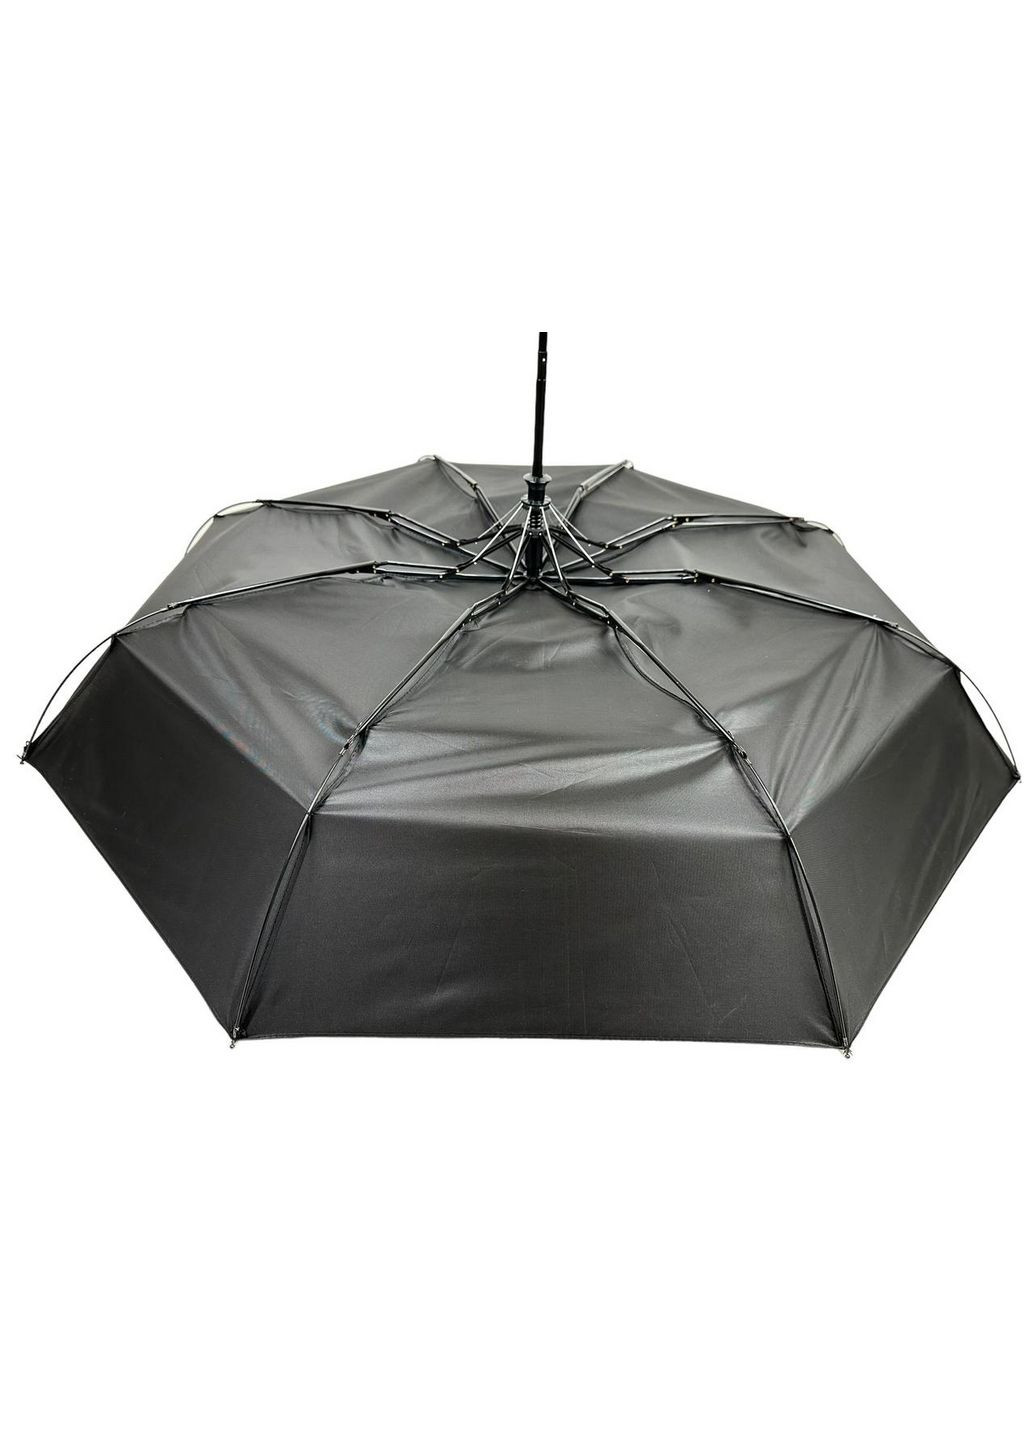 Мужской складной зонт полуавтоматический Max (288047538)